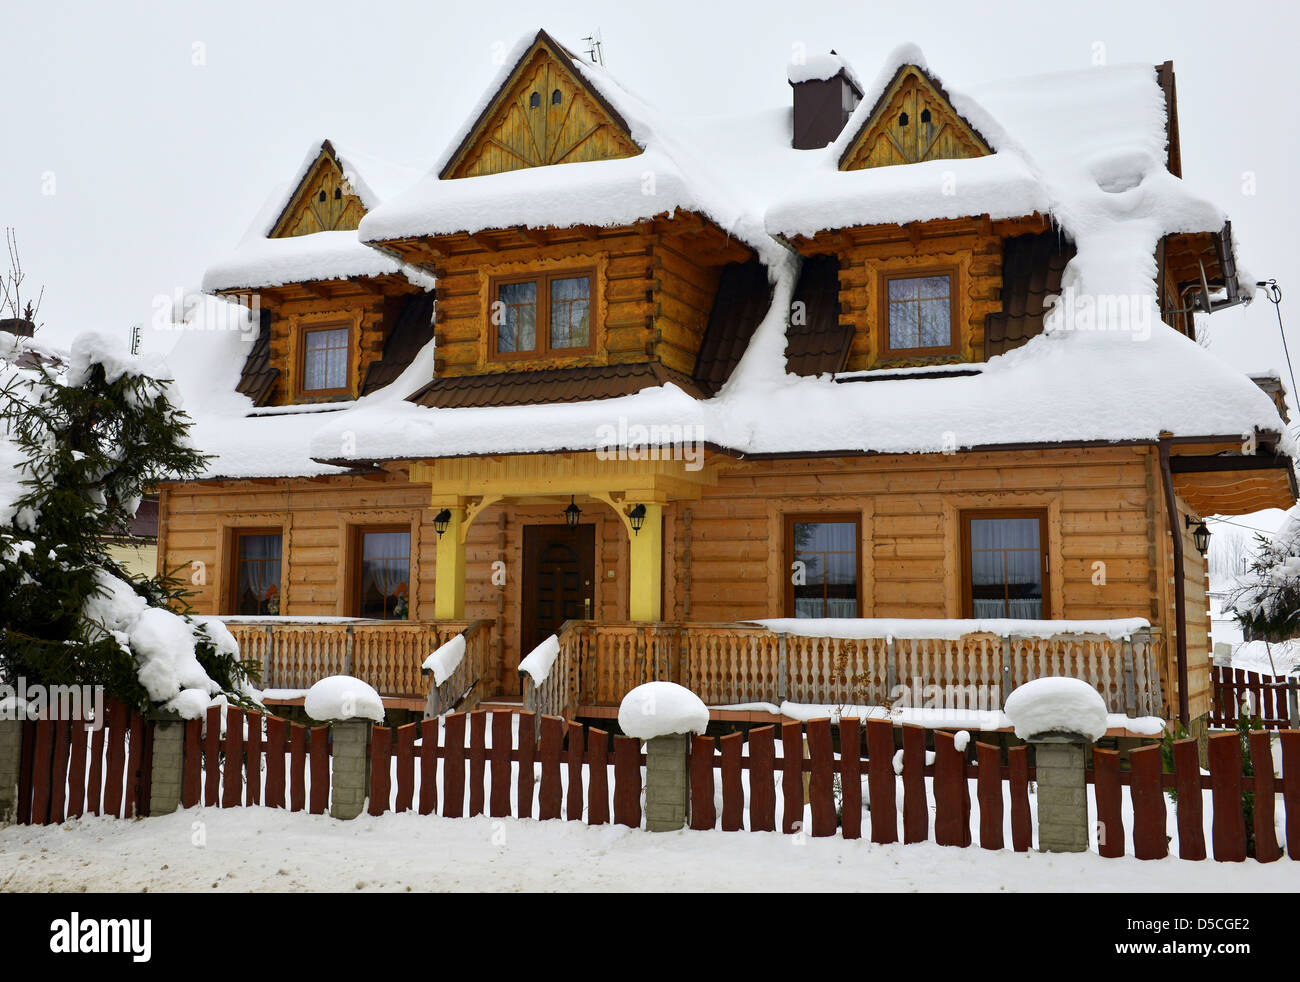 Maison en bois couverte de neige, dans le pittoresque village de Chocholow en montagnes Tatras près de Zakopane Pologne Banque D'Images